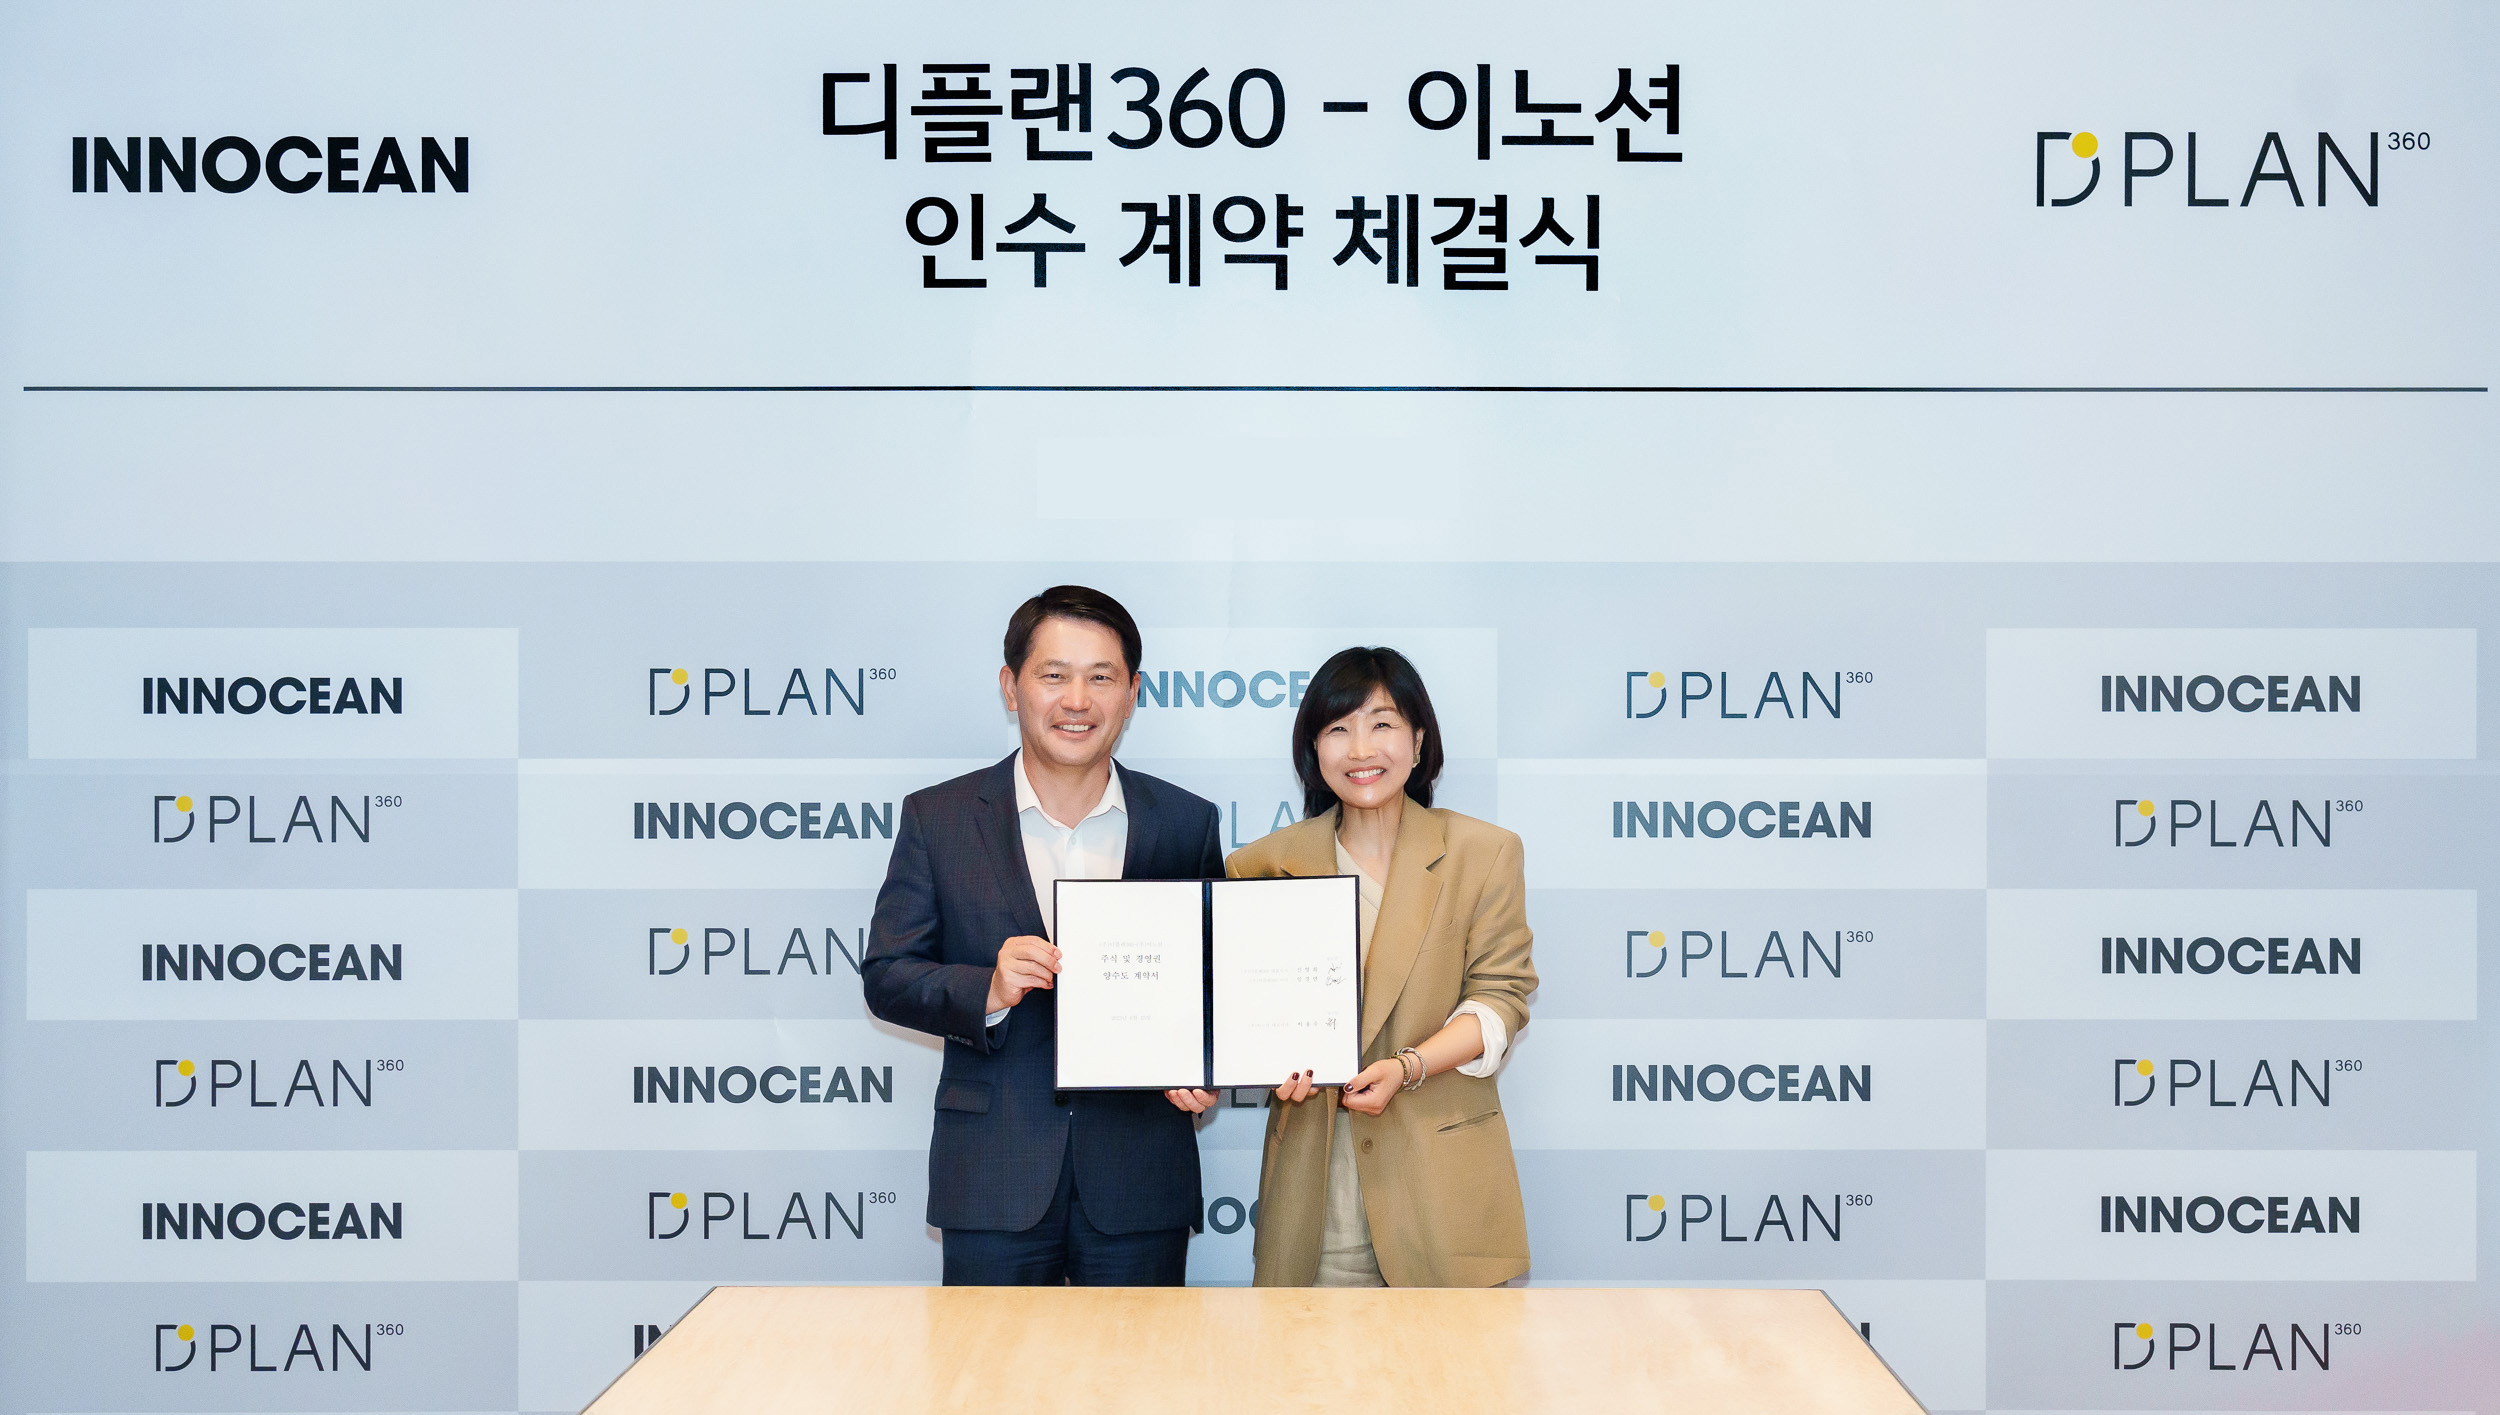 이용우(왼쪽) 이노션 대표이사와 신영희 디플랜360 대표이사가 이노션 서울 본사에서 열린 지분 인수 계약식에서 기념사진을 찍고 있다. 이노션 제공